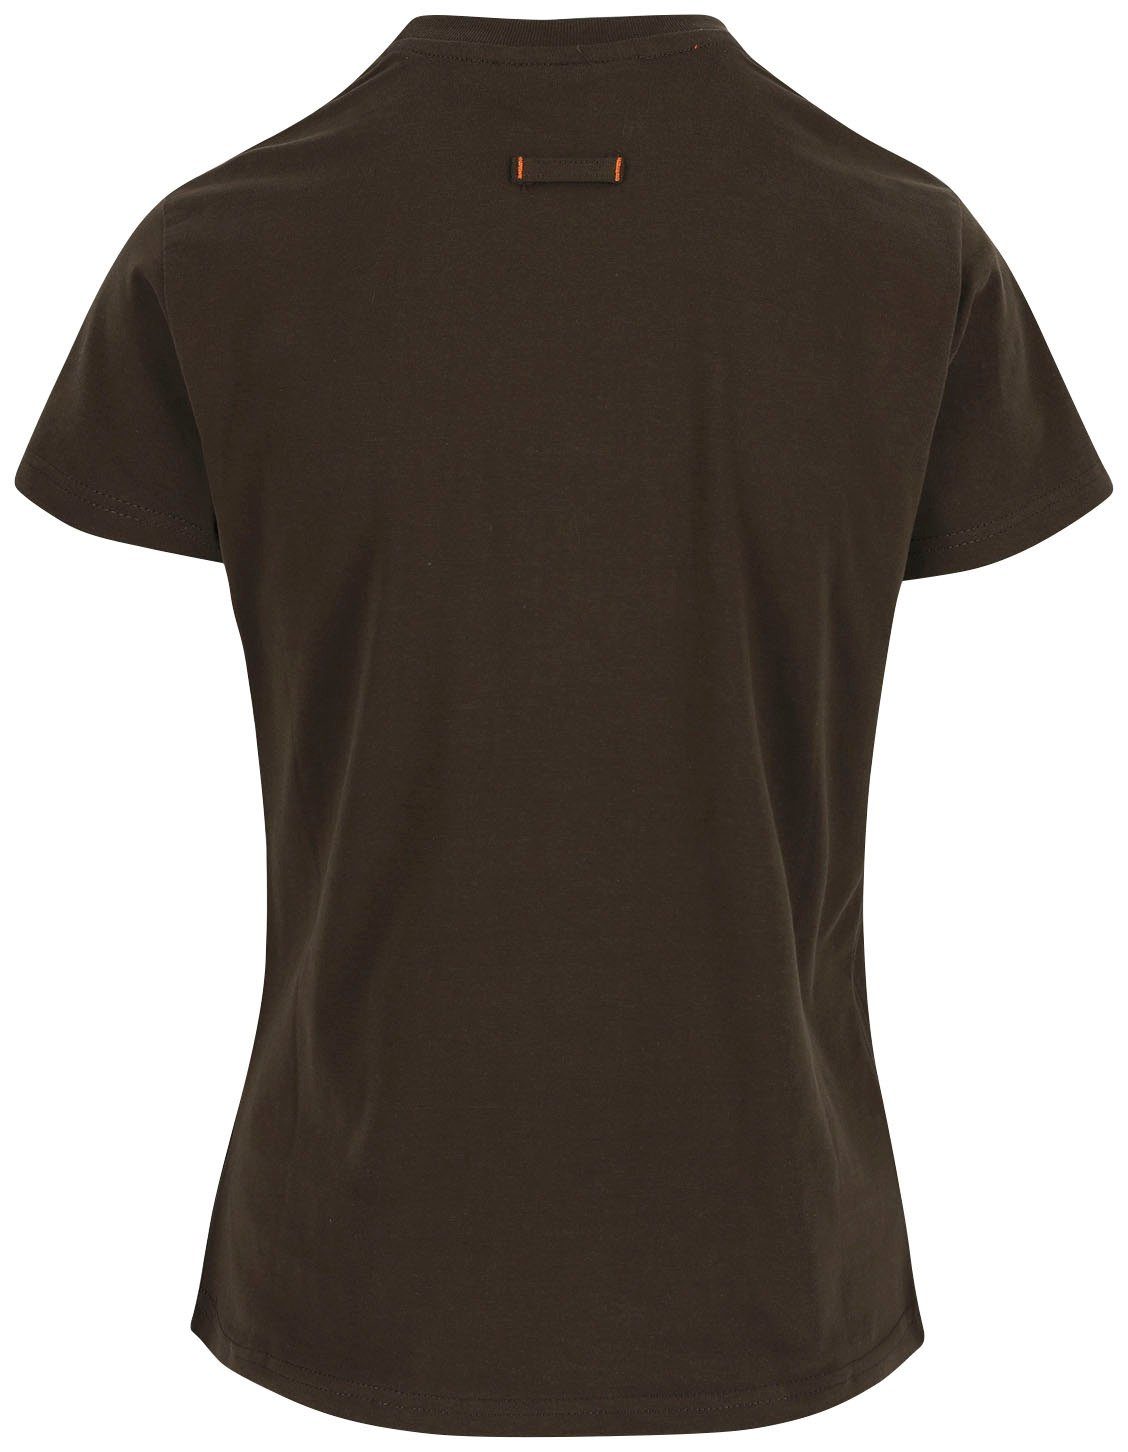 Herock T-Shirt Epona T-Shirt angenehmes Tragegefühl 1 Figurbetont, Kurzärmlig Schlaufe, braun hintere Damen